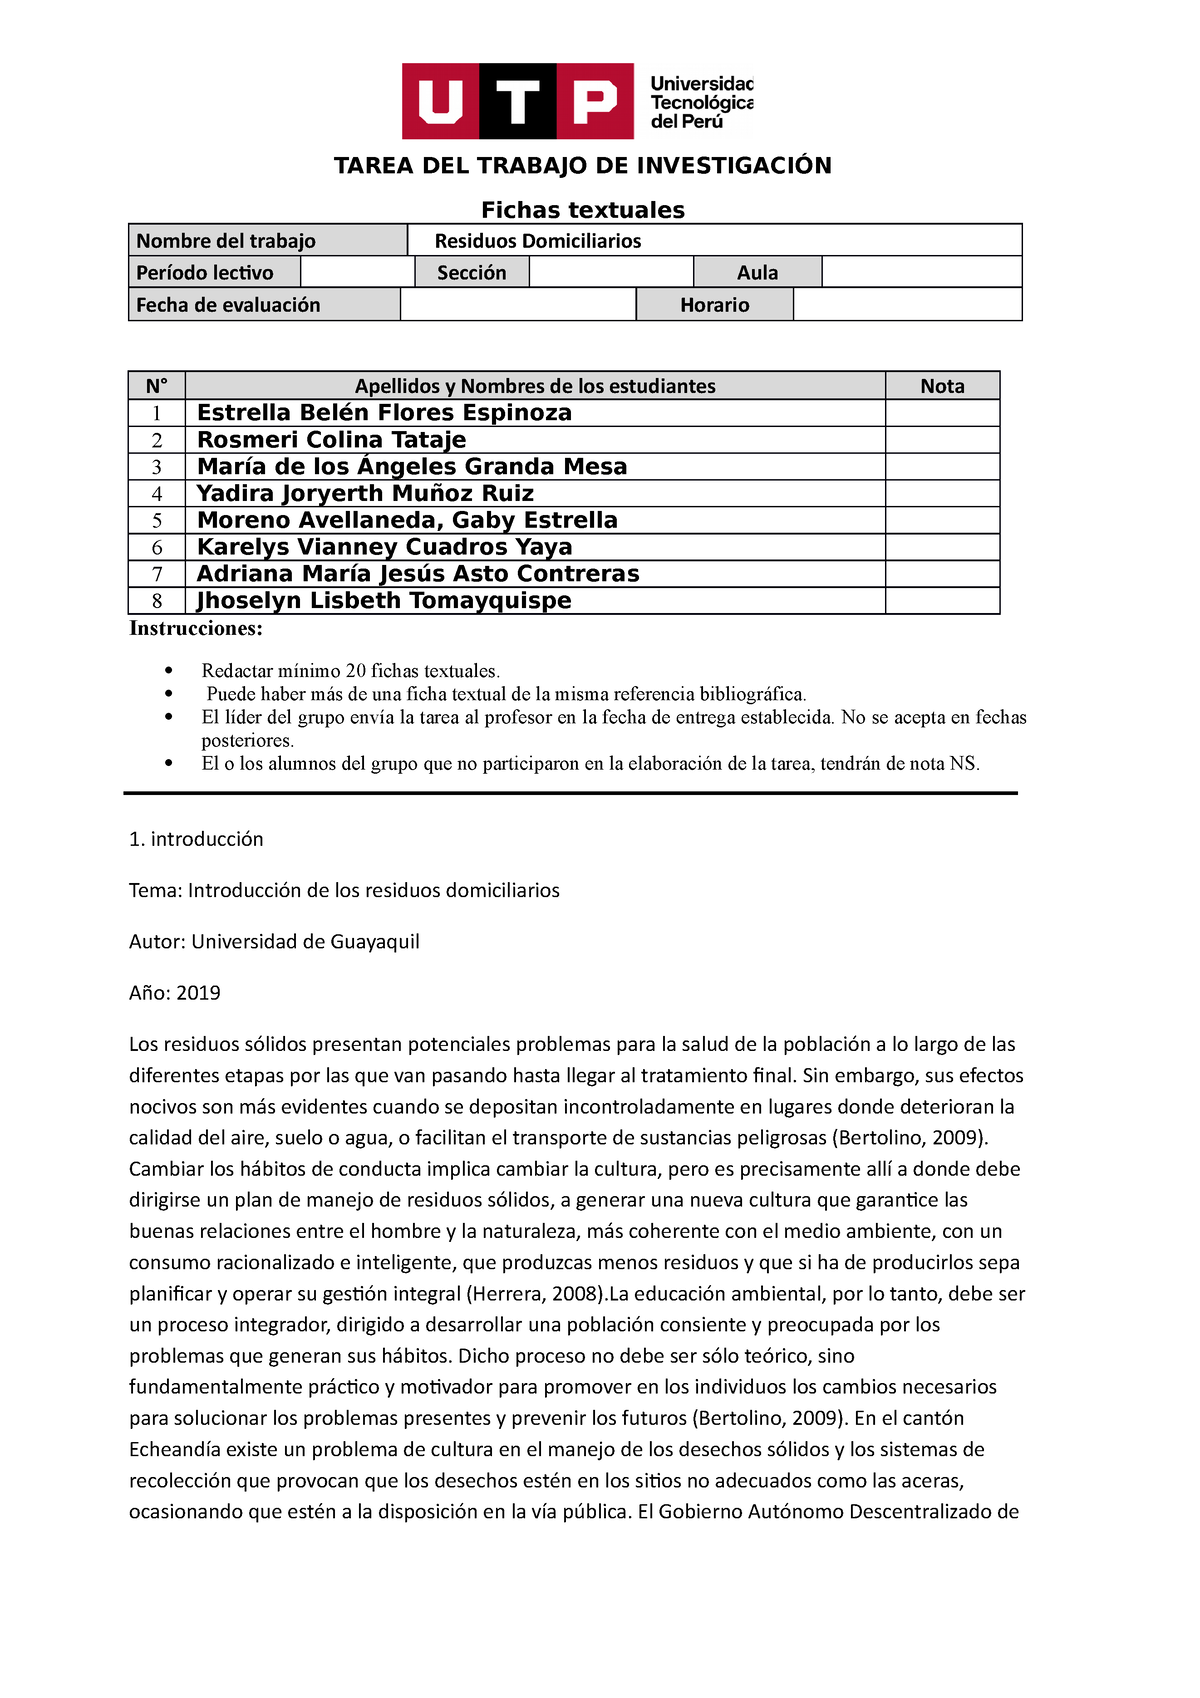 Formato De Entrega De Tarea De Fichas Textuales Tarea Del Trabajo De InvestigaciÓn Fichas 7479